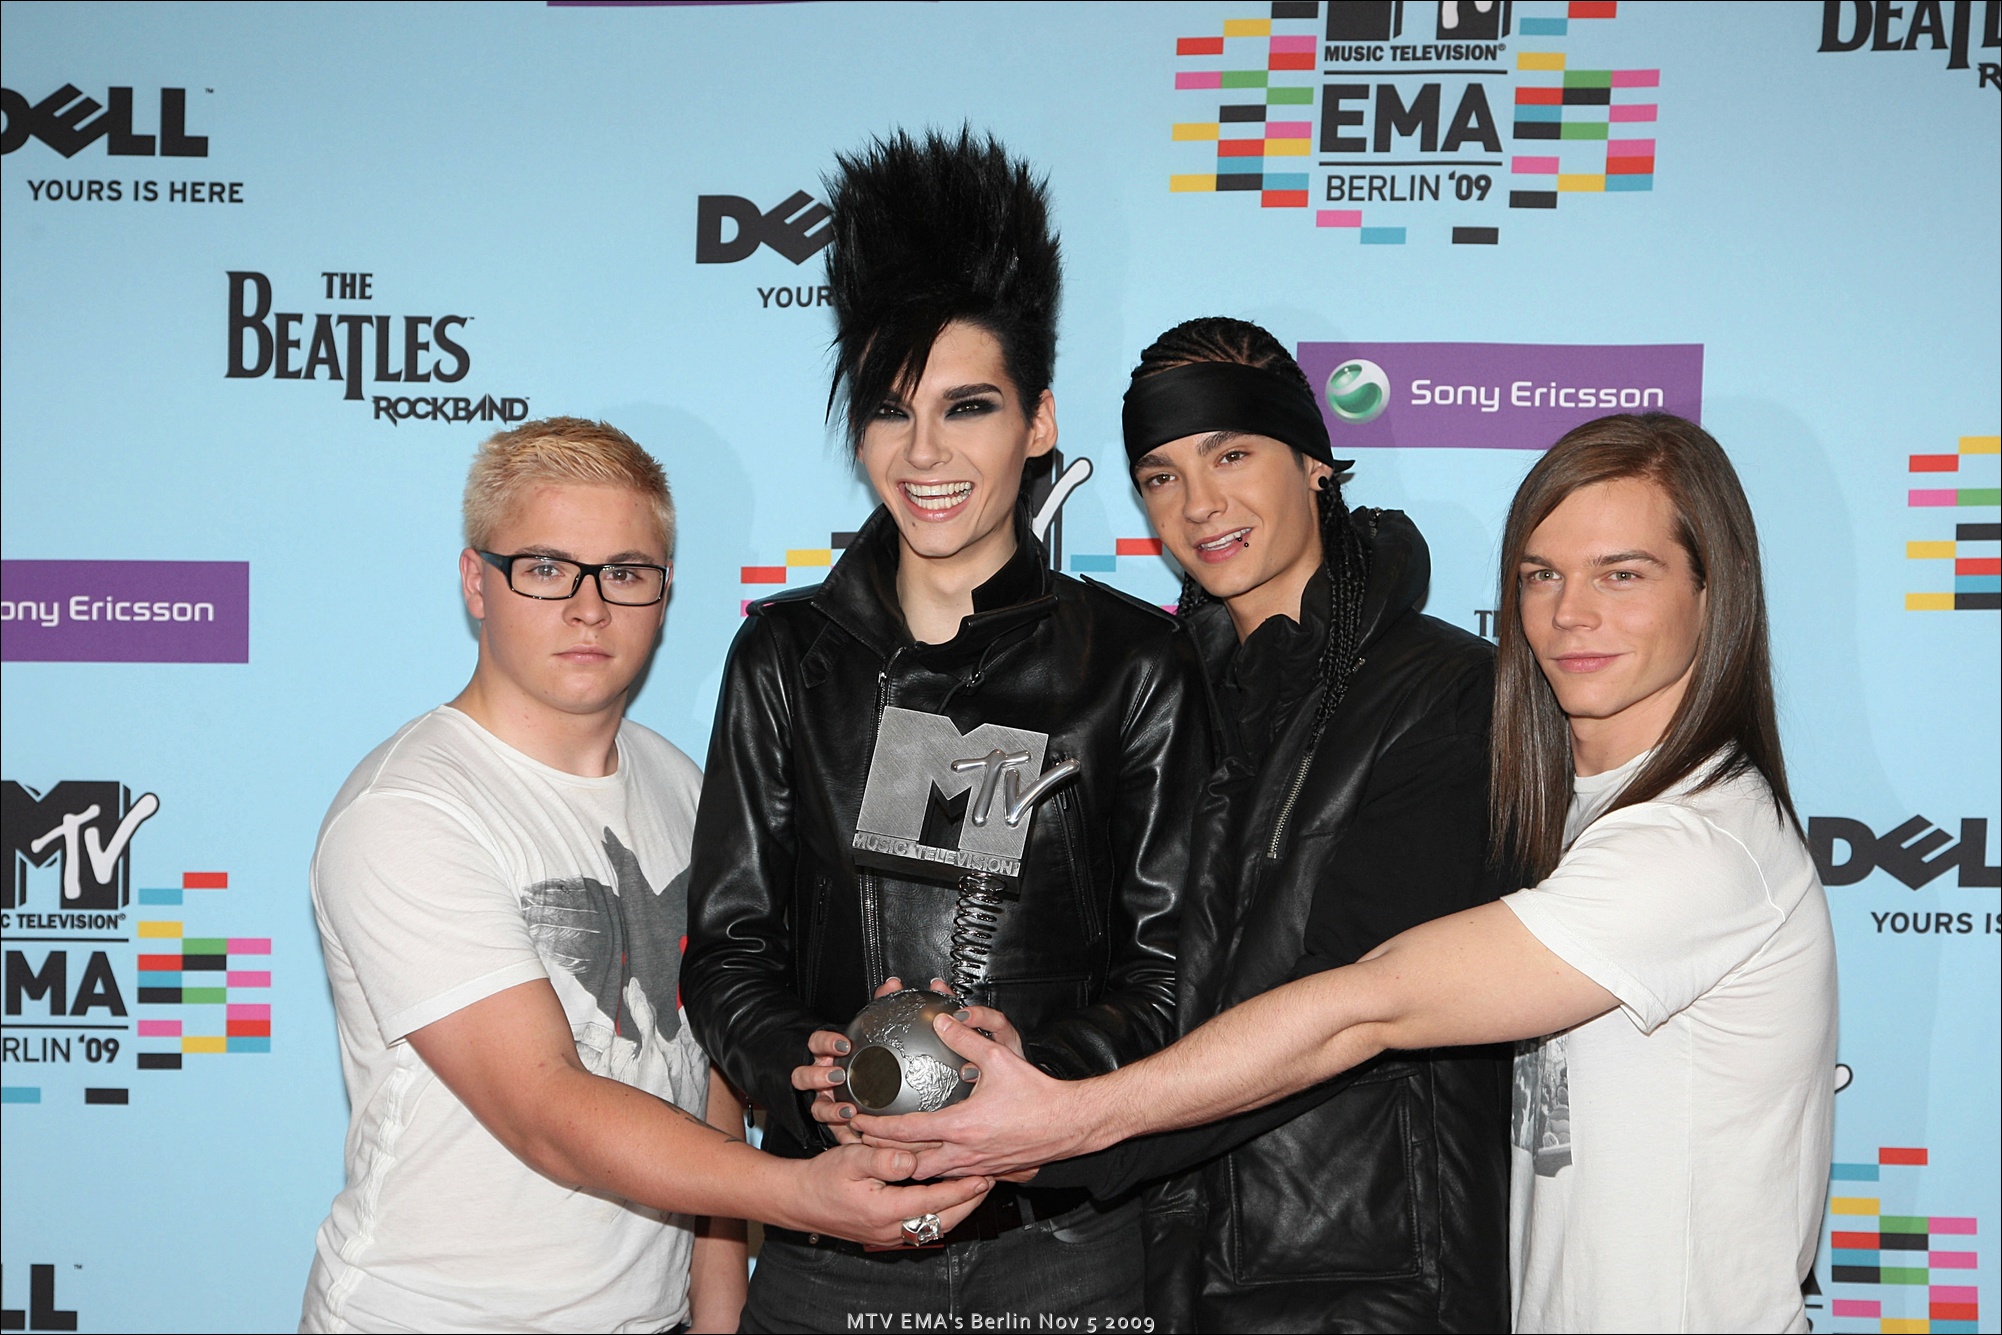 MTV EMA Berlin Nov 5 2009 85